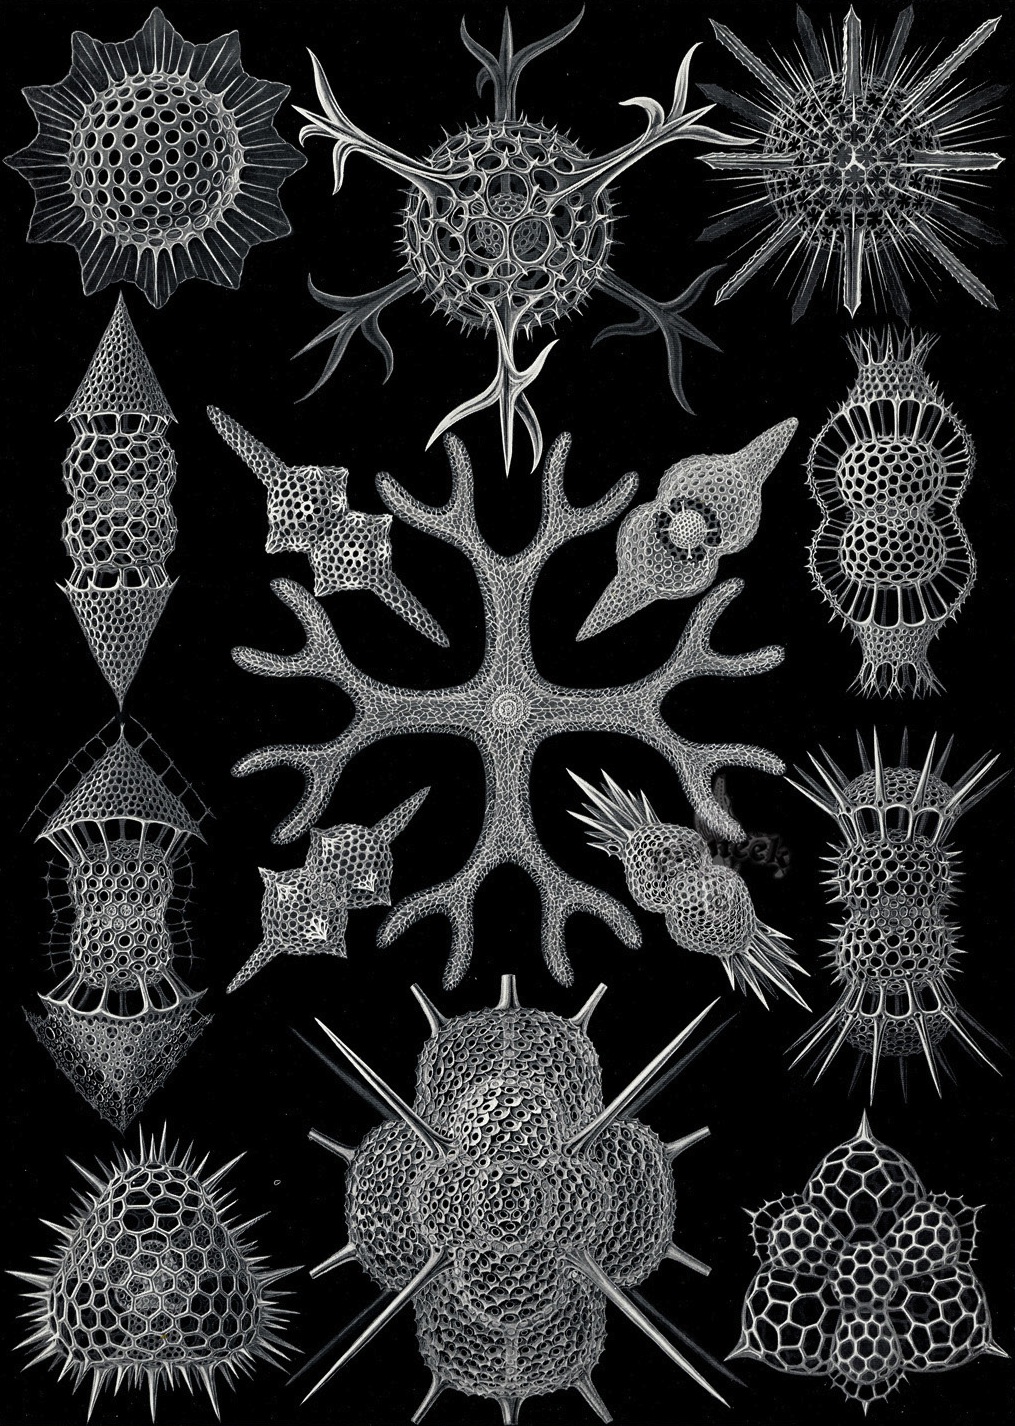 Kunstformen der Natur - Ernst Haeckel 1899-1904 (8).jpg